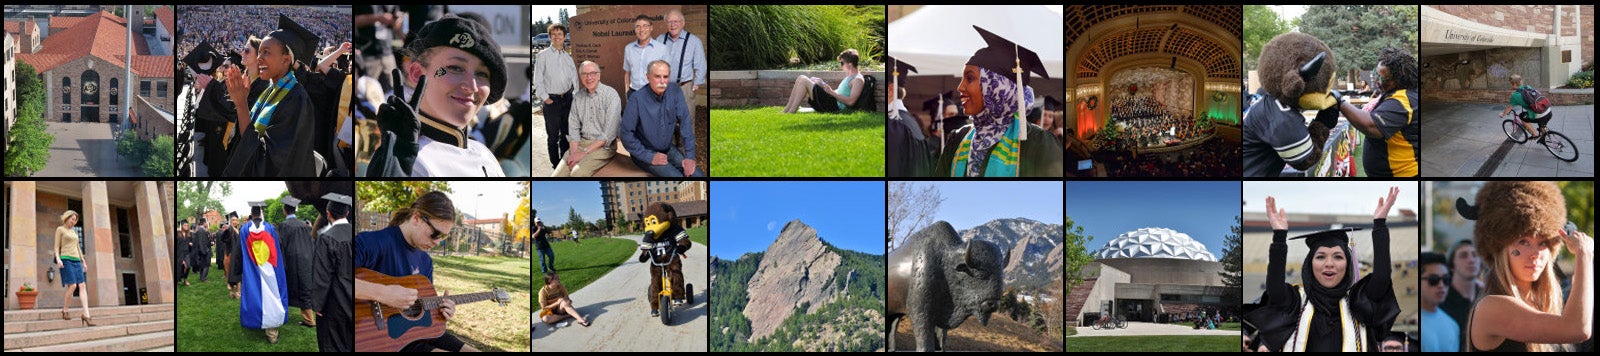 CU Boulder Chancellor Search